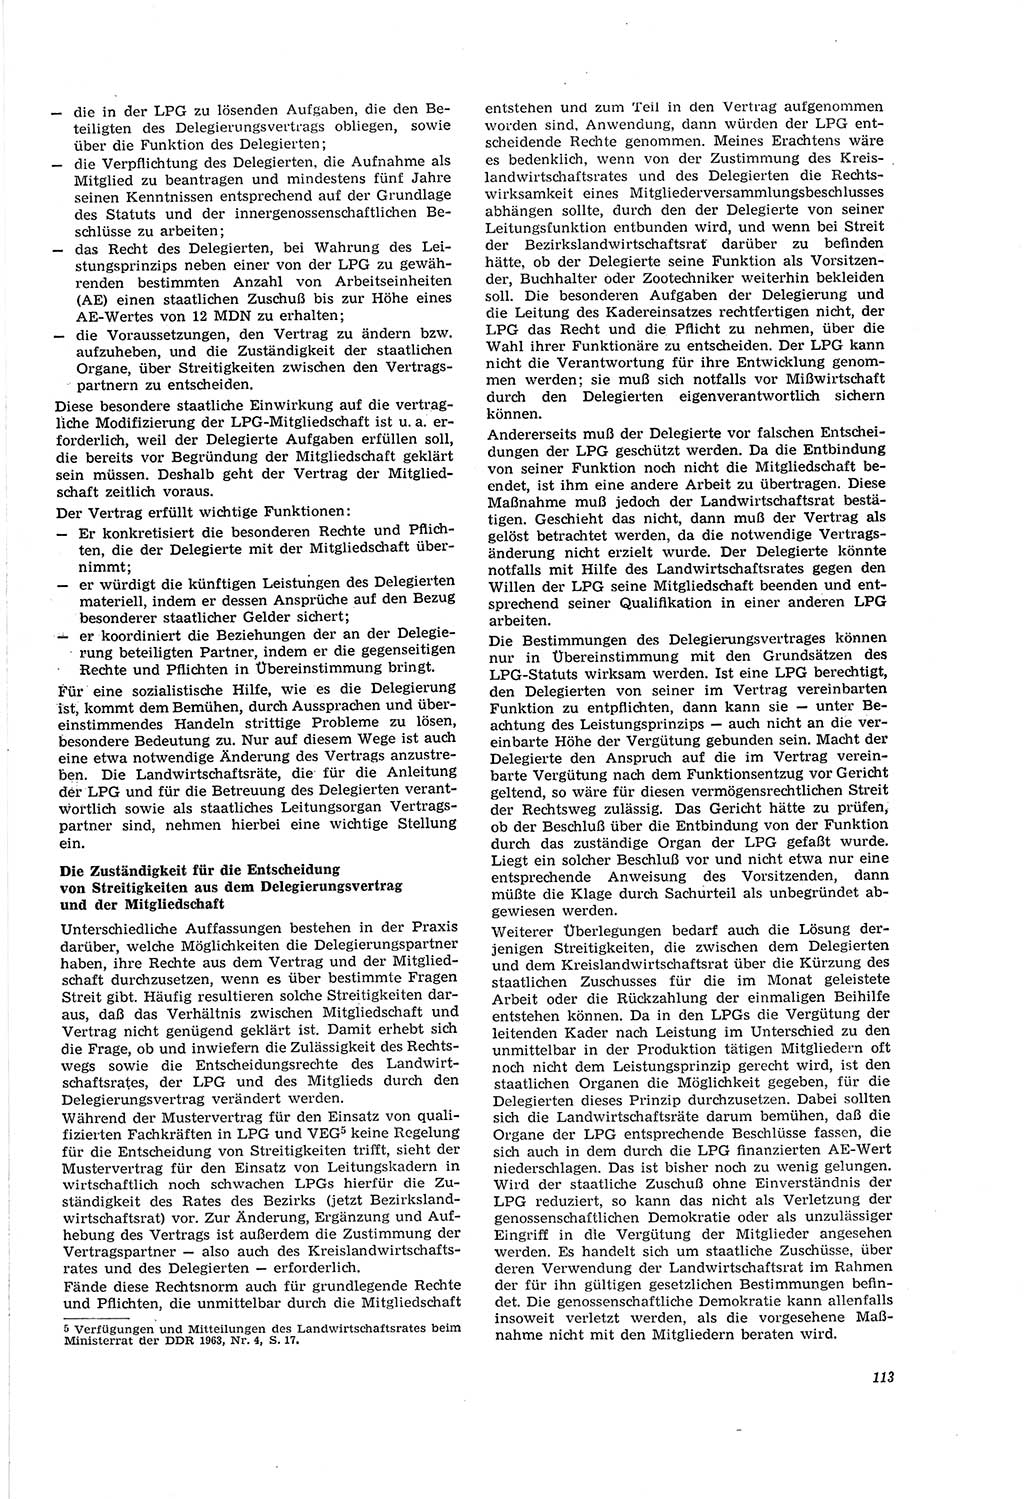 Neue Justiz (NJ), Zeitschrift für Recht und Rechtswissenschaft [Deutsche Demokratische Republik (DDR)], 20. Jahrgang 1966, Seite 113 (NJ DDR 1966, S. 113)